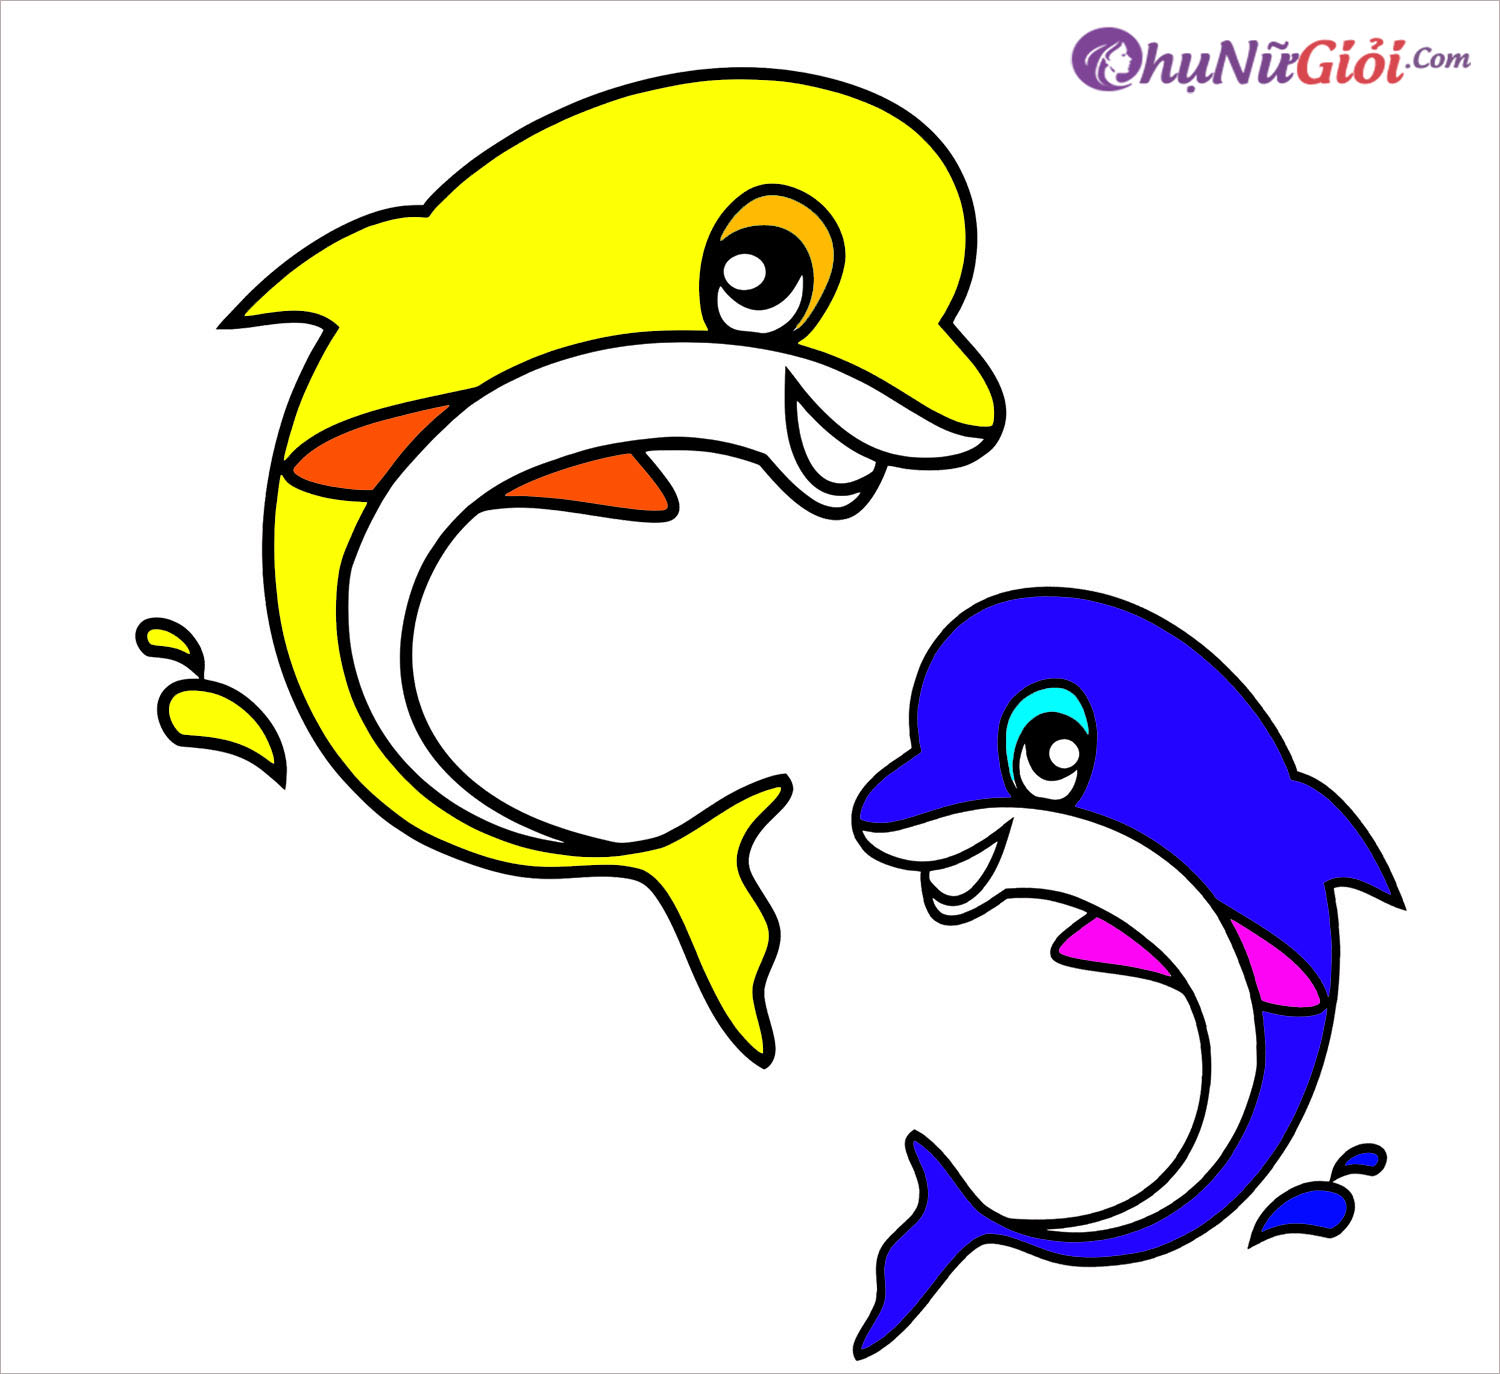 Vẽ con vật  vẽ cá heo  How to draw a Dolphin  Kim Thành Cần Giờ  YouTube